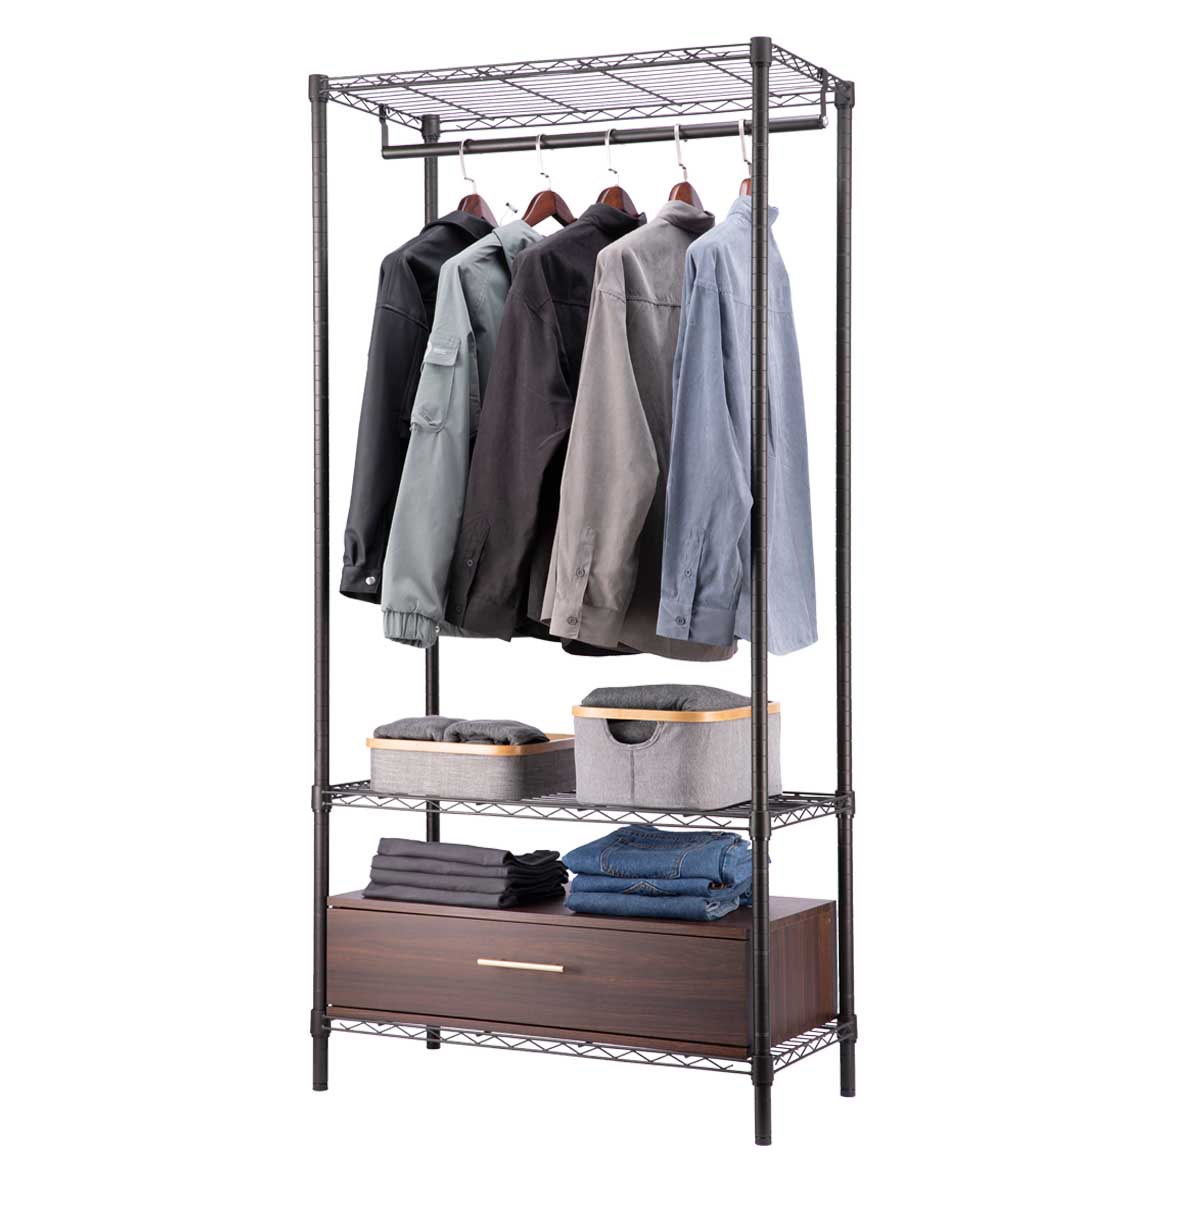 Wire Closet Shelf Organizer With Hanging Rod, Shelf & Wooden Drawer / Freestanding Open Wardrobe Organizer